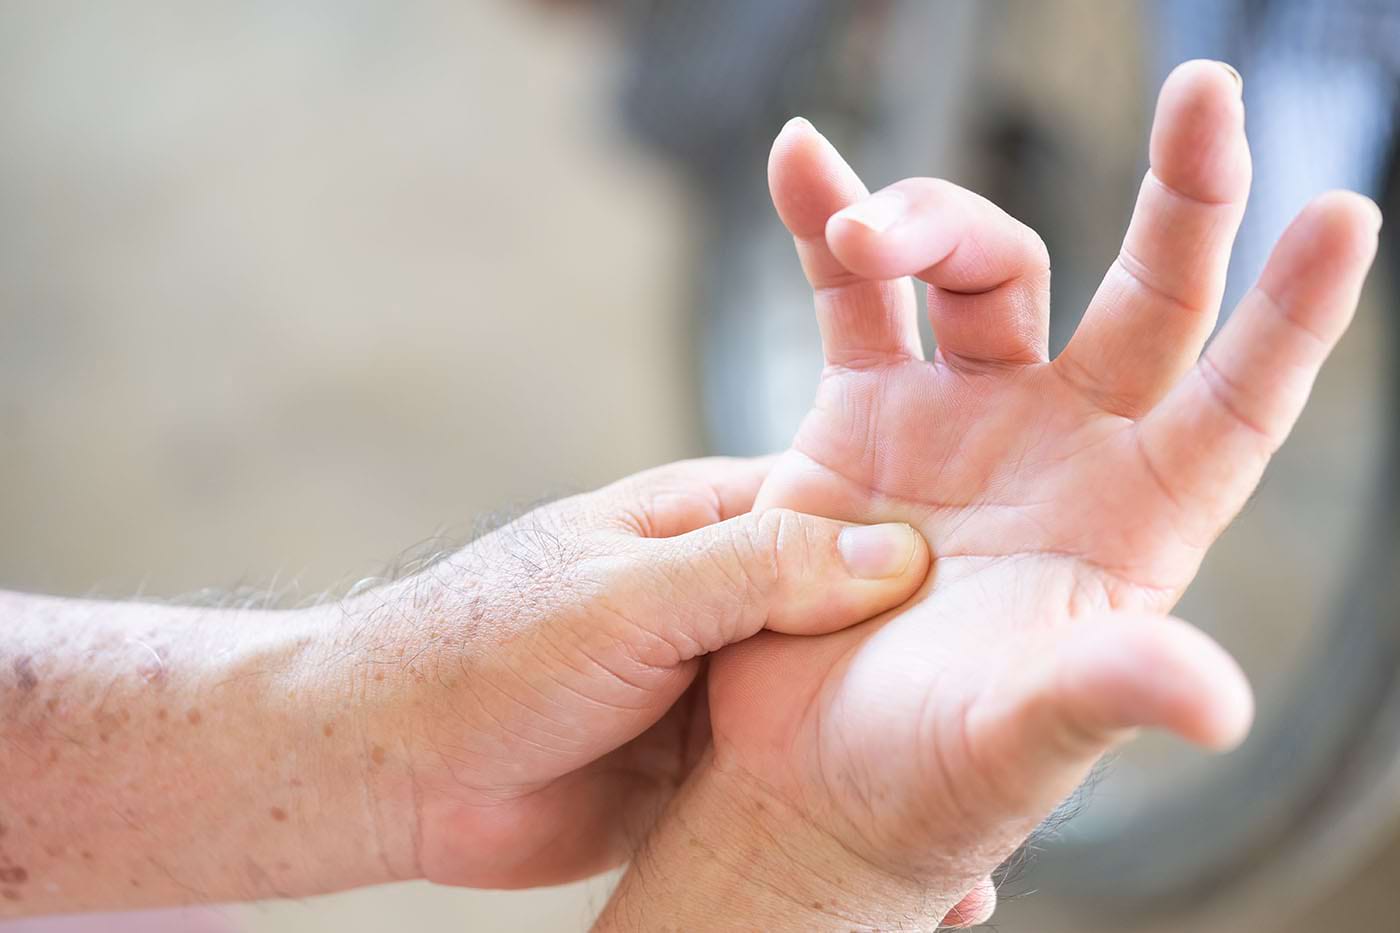 Durere În Degetul Mijlociu De Mâna Stângă Articulația degetului mijlociu de pe mâna stângă doare